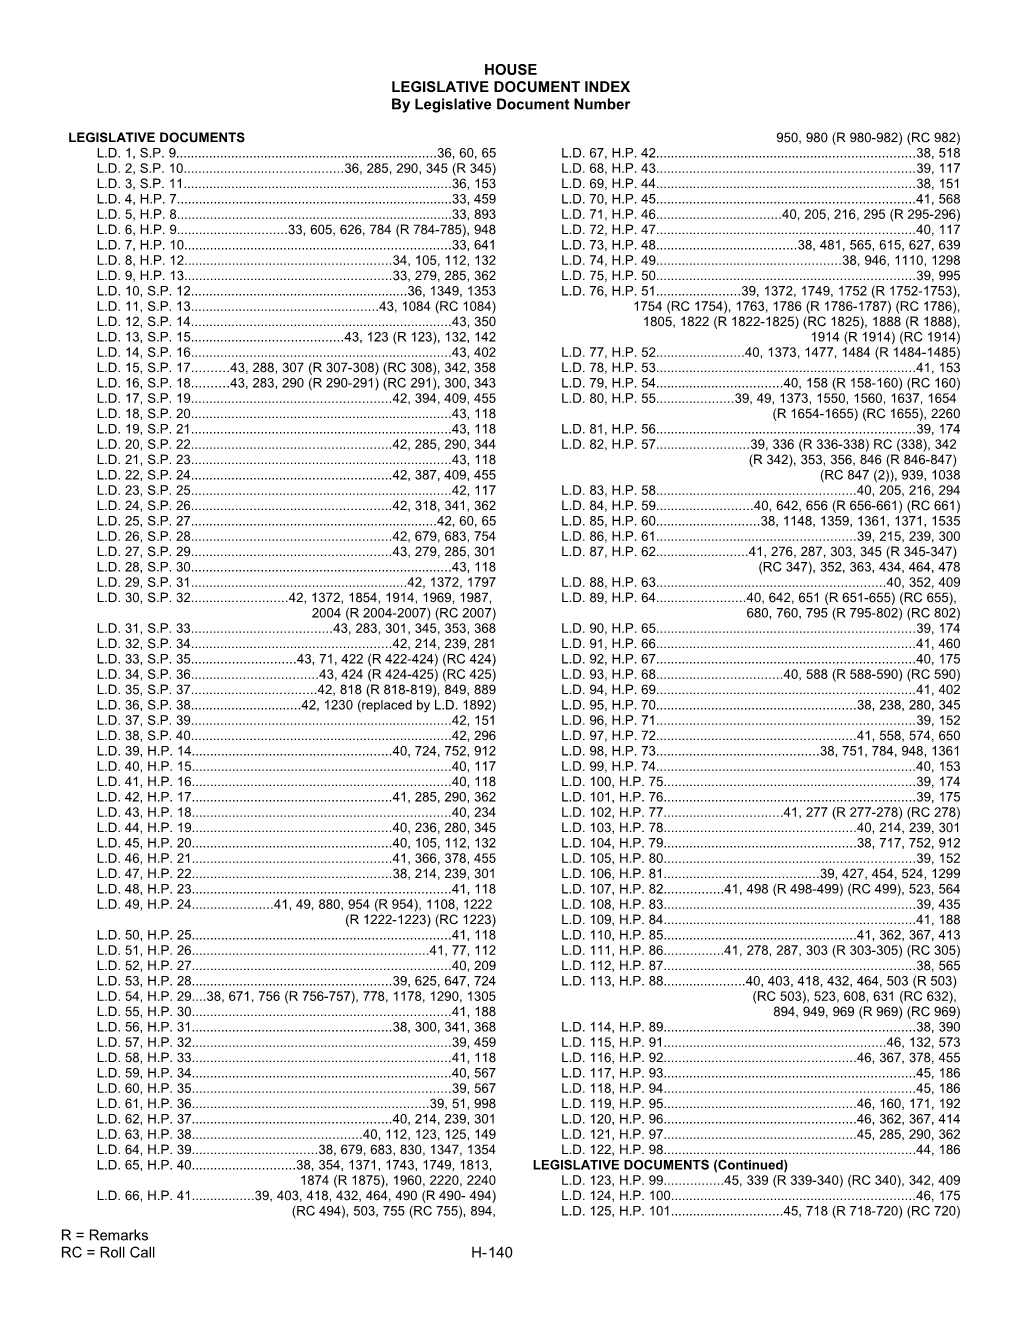 Legislative Document Index s2